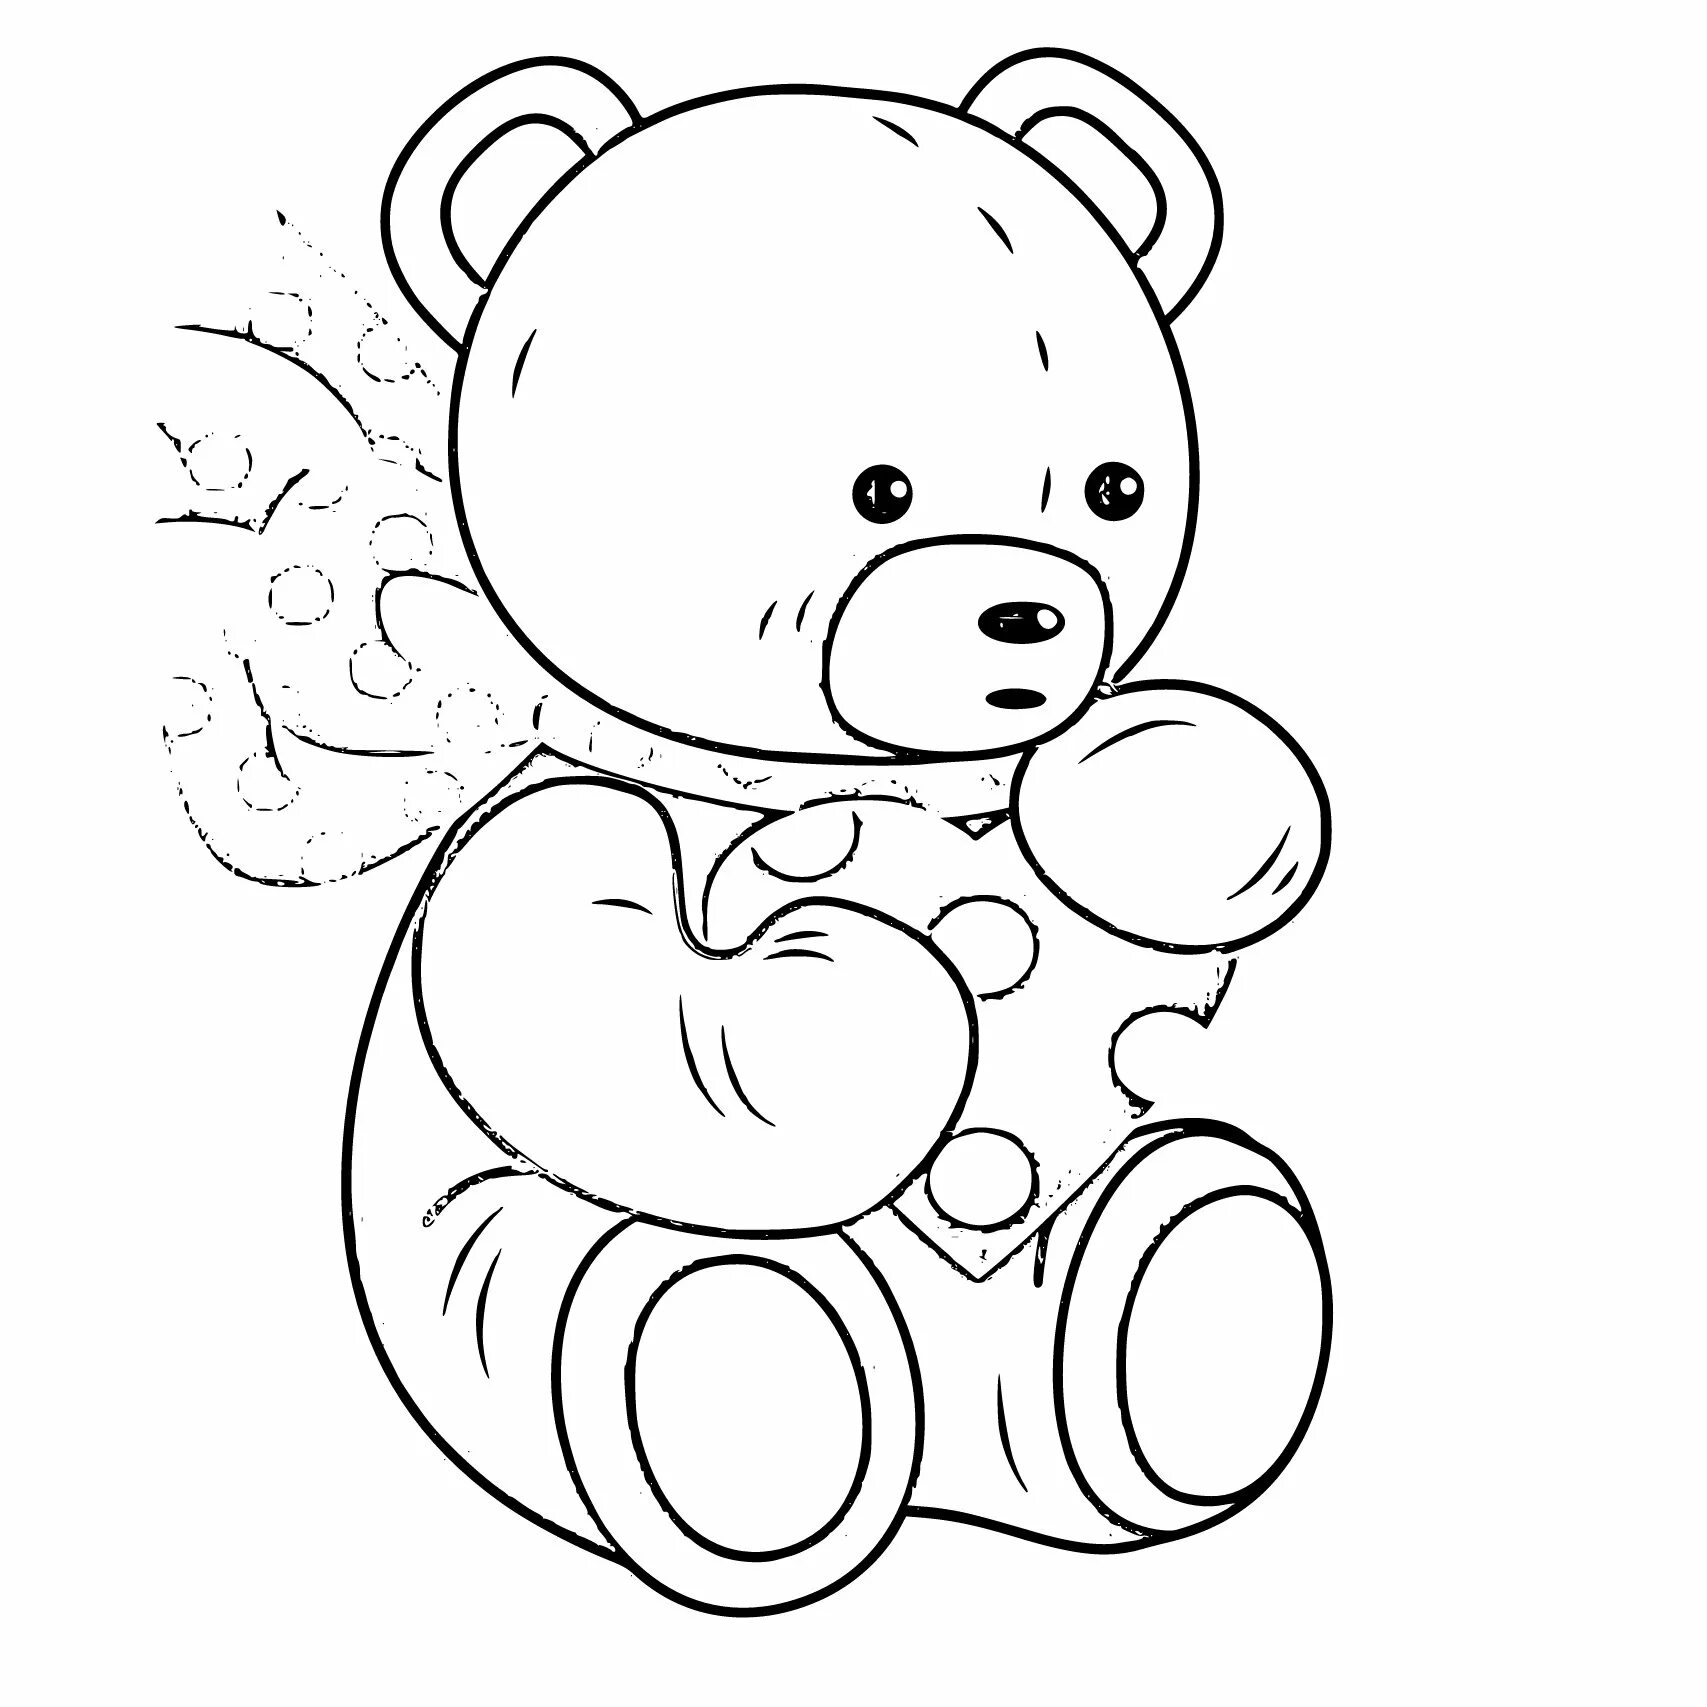 Раскраска желейного медведя. Раскраска. Медвежонок. Раскраска "мишки". Медведь раскраска для детей. Плюшевый мишка раскраска.